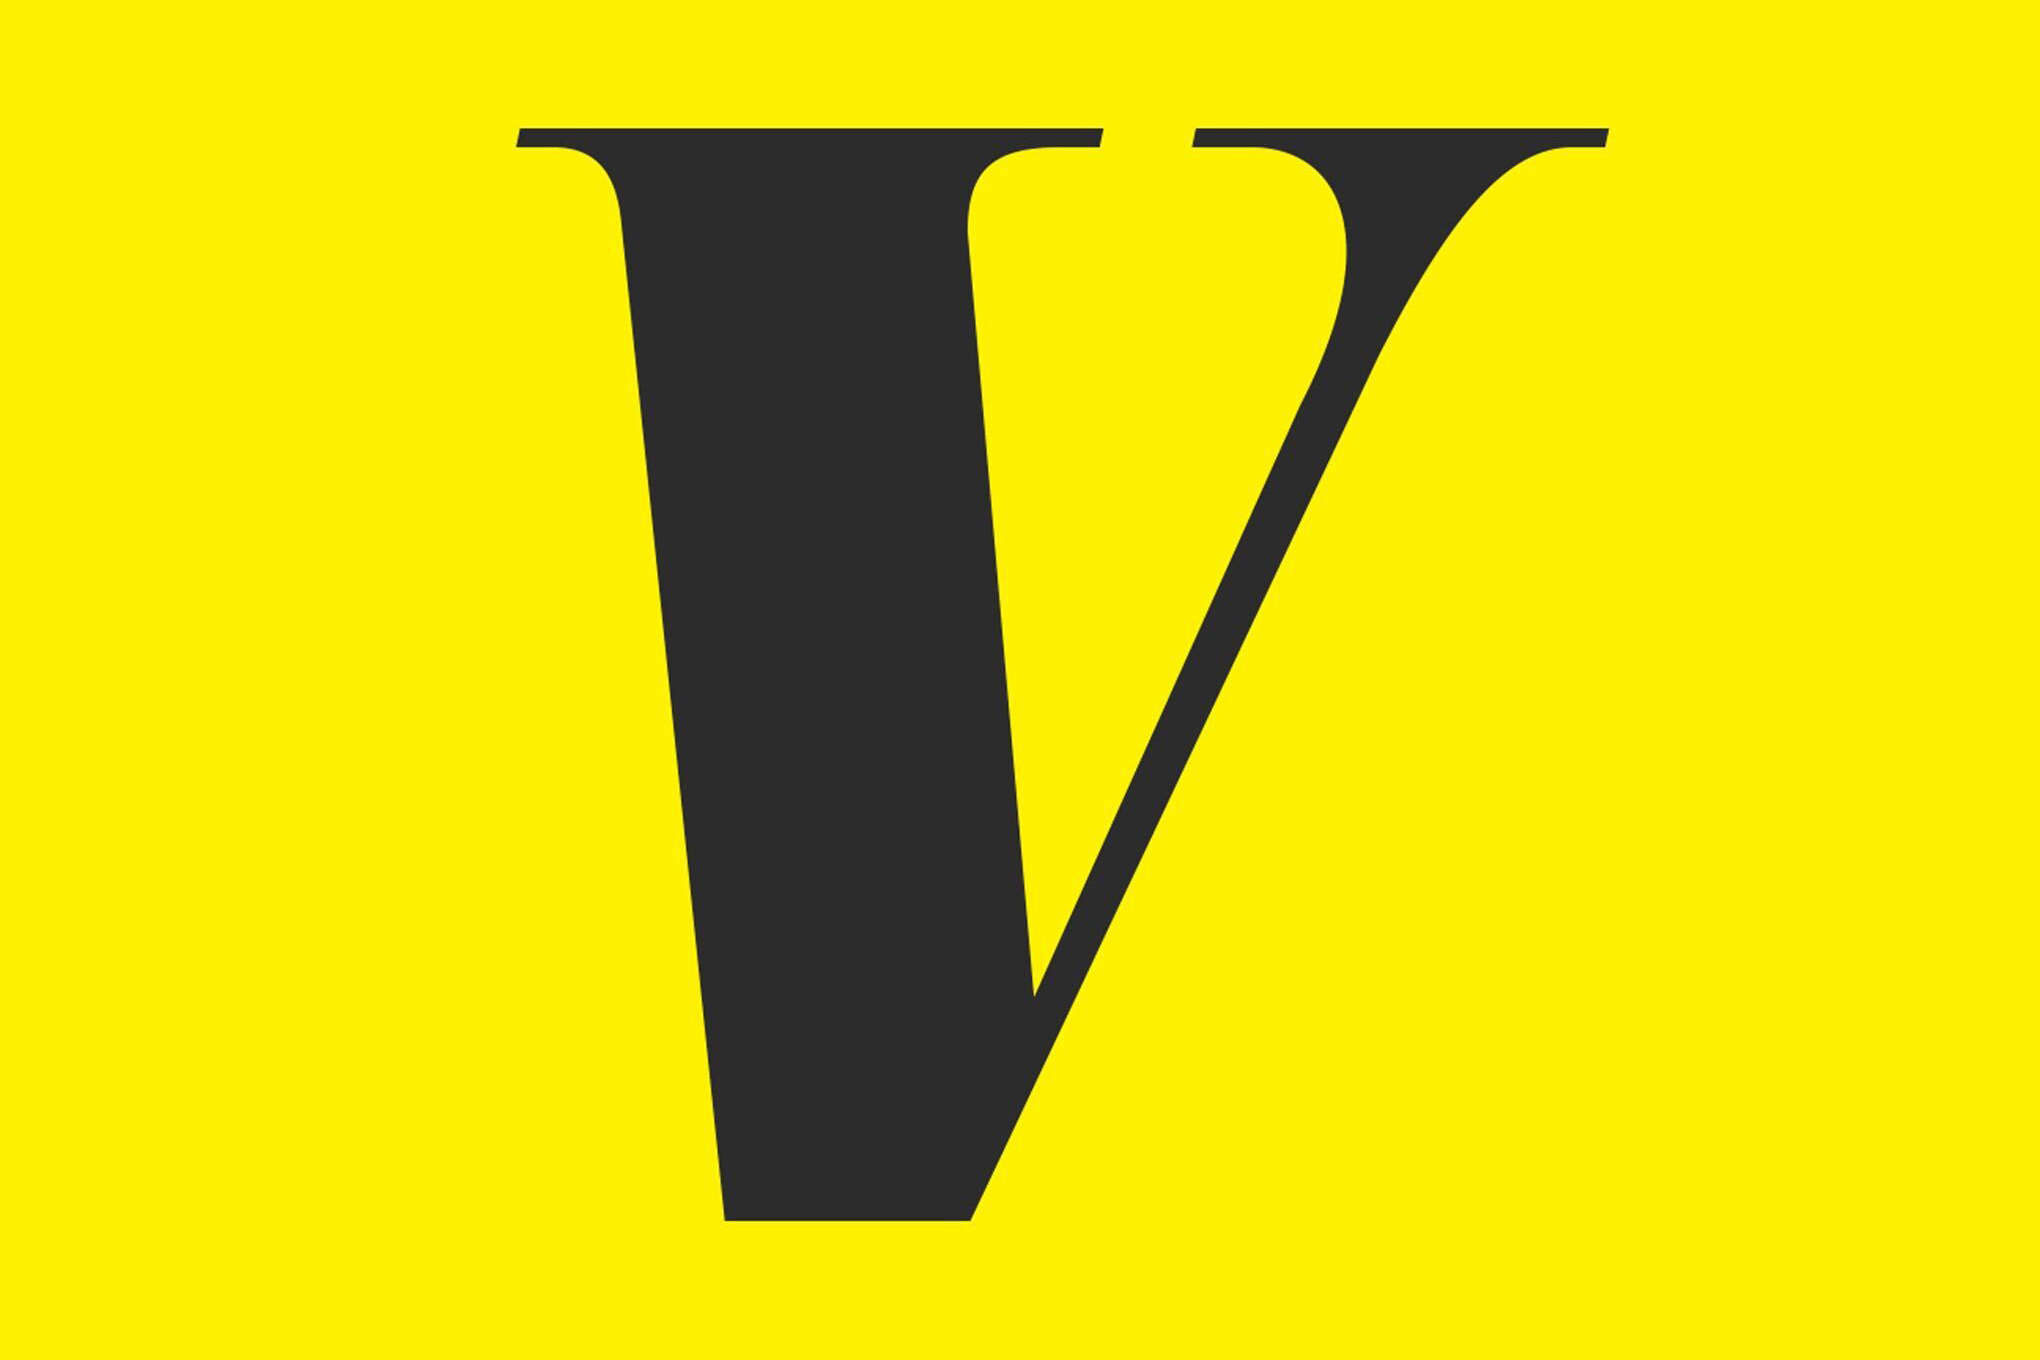 Vox logo_4x3